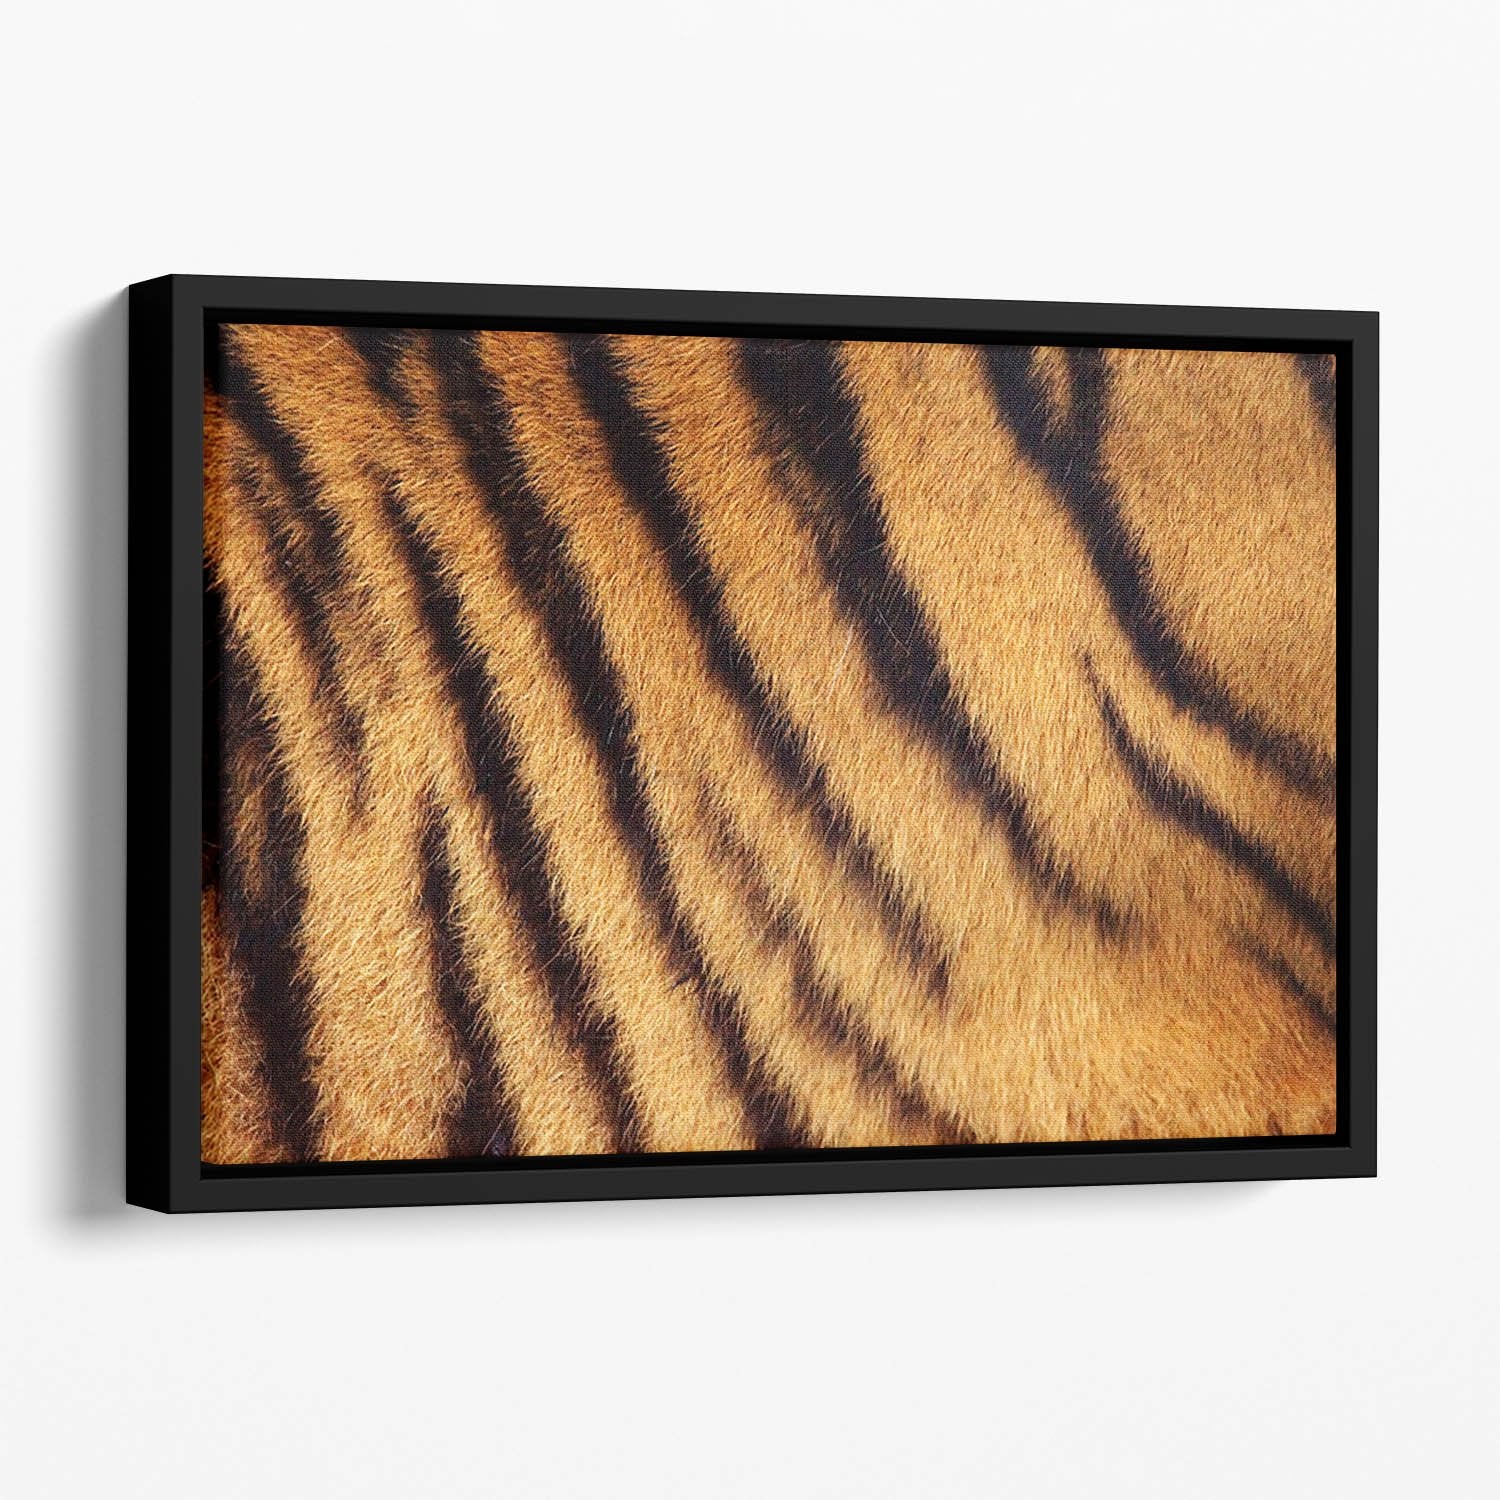 Siberian or Amur tiger stripped fur Floating Framed Canvas